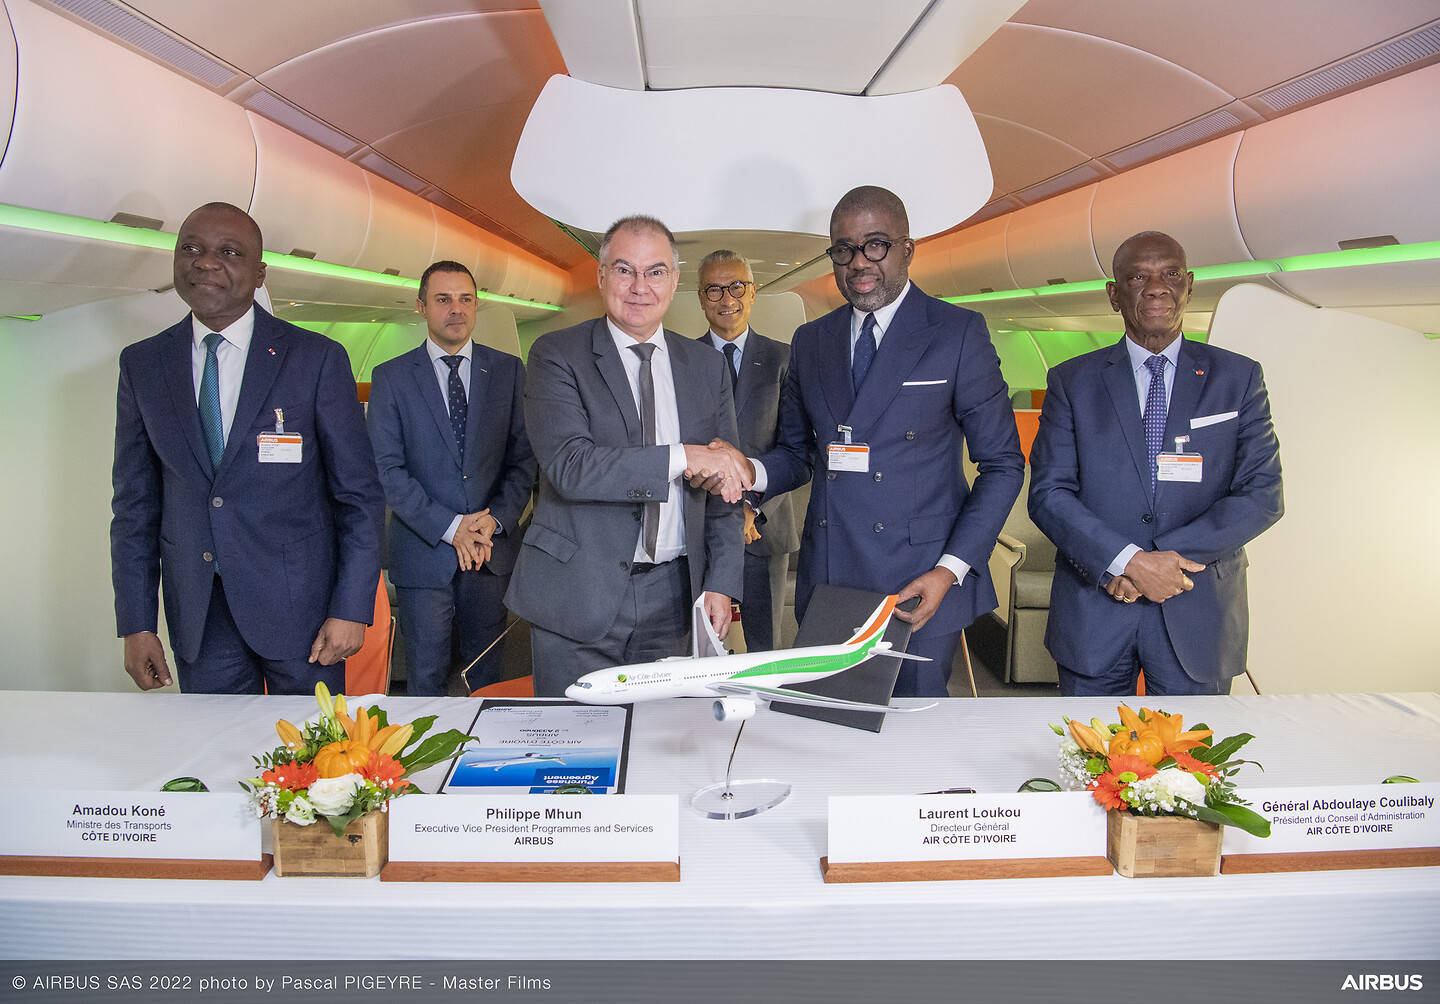 Air Côte d'Ivoire: expansão de frota com A330neo